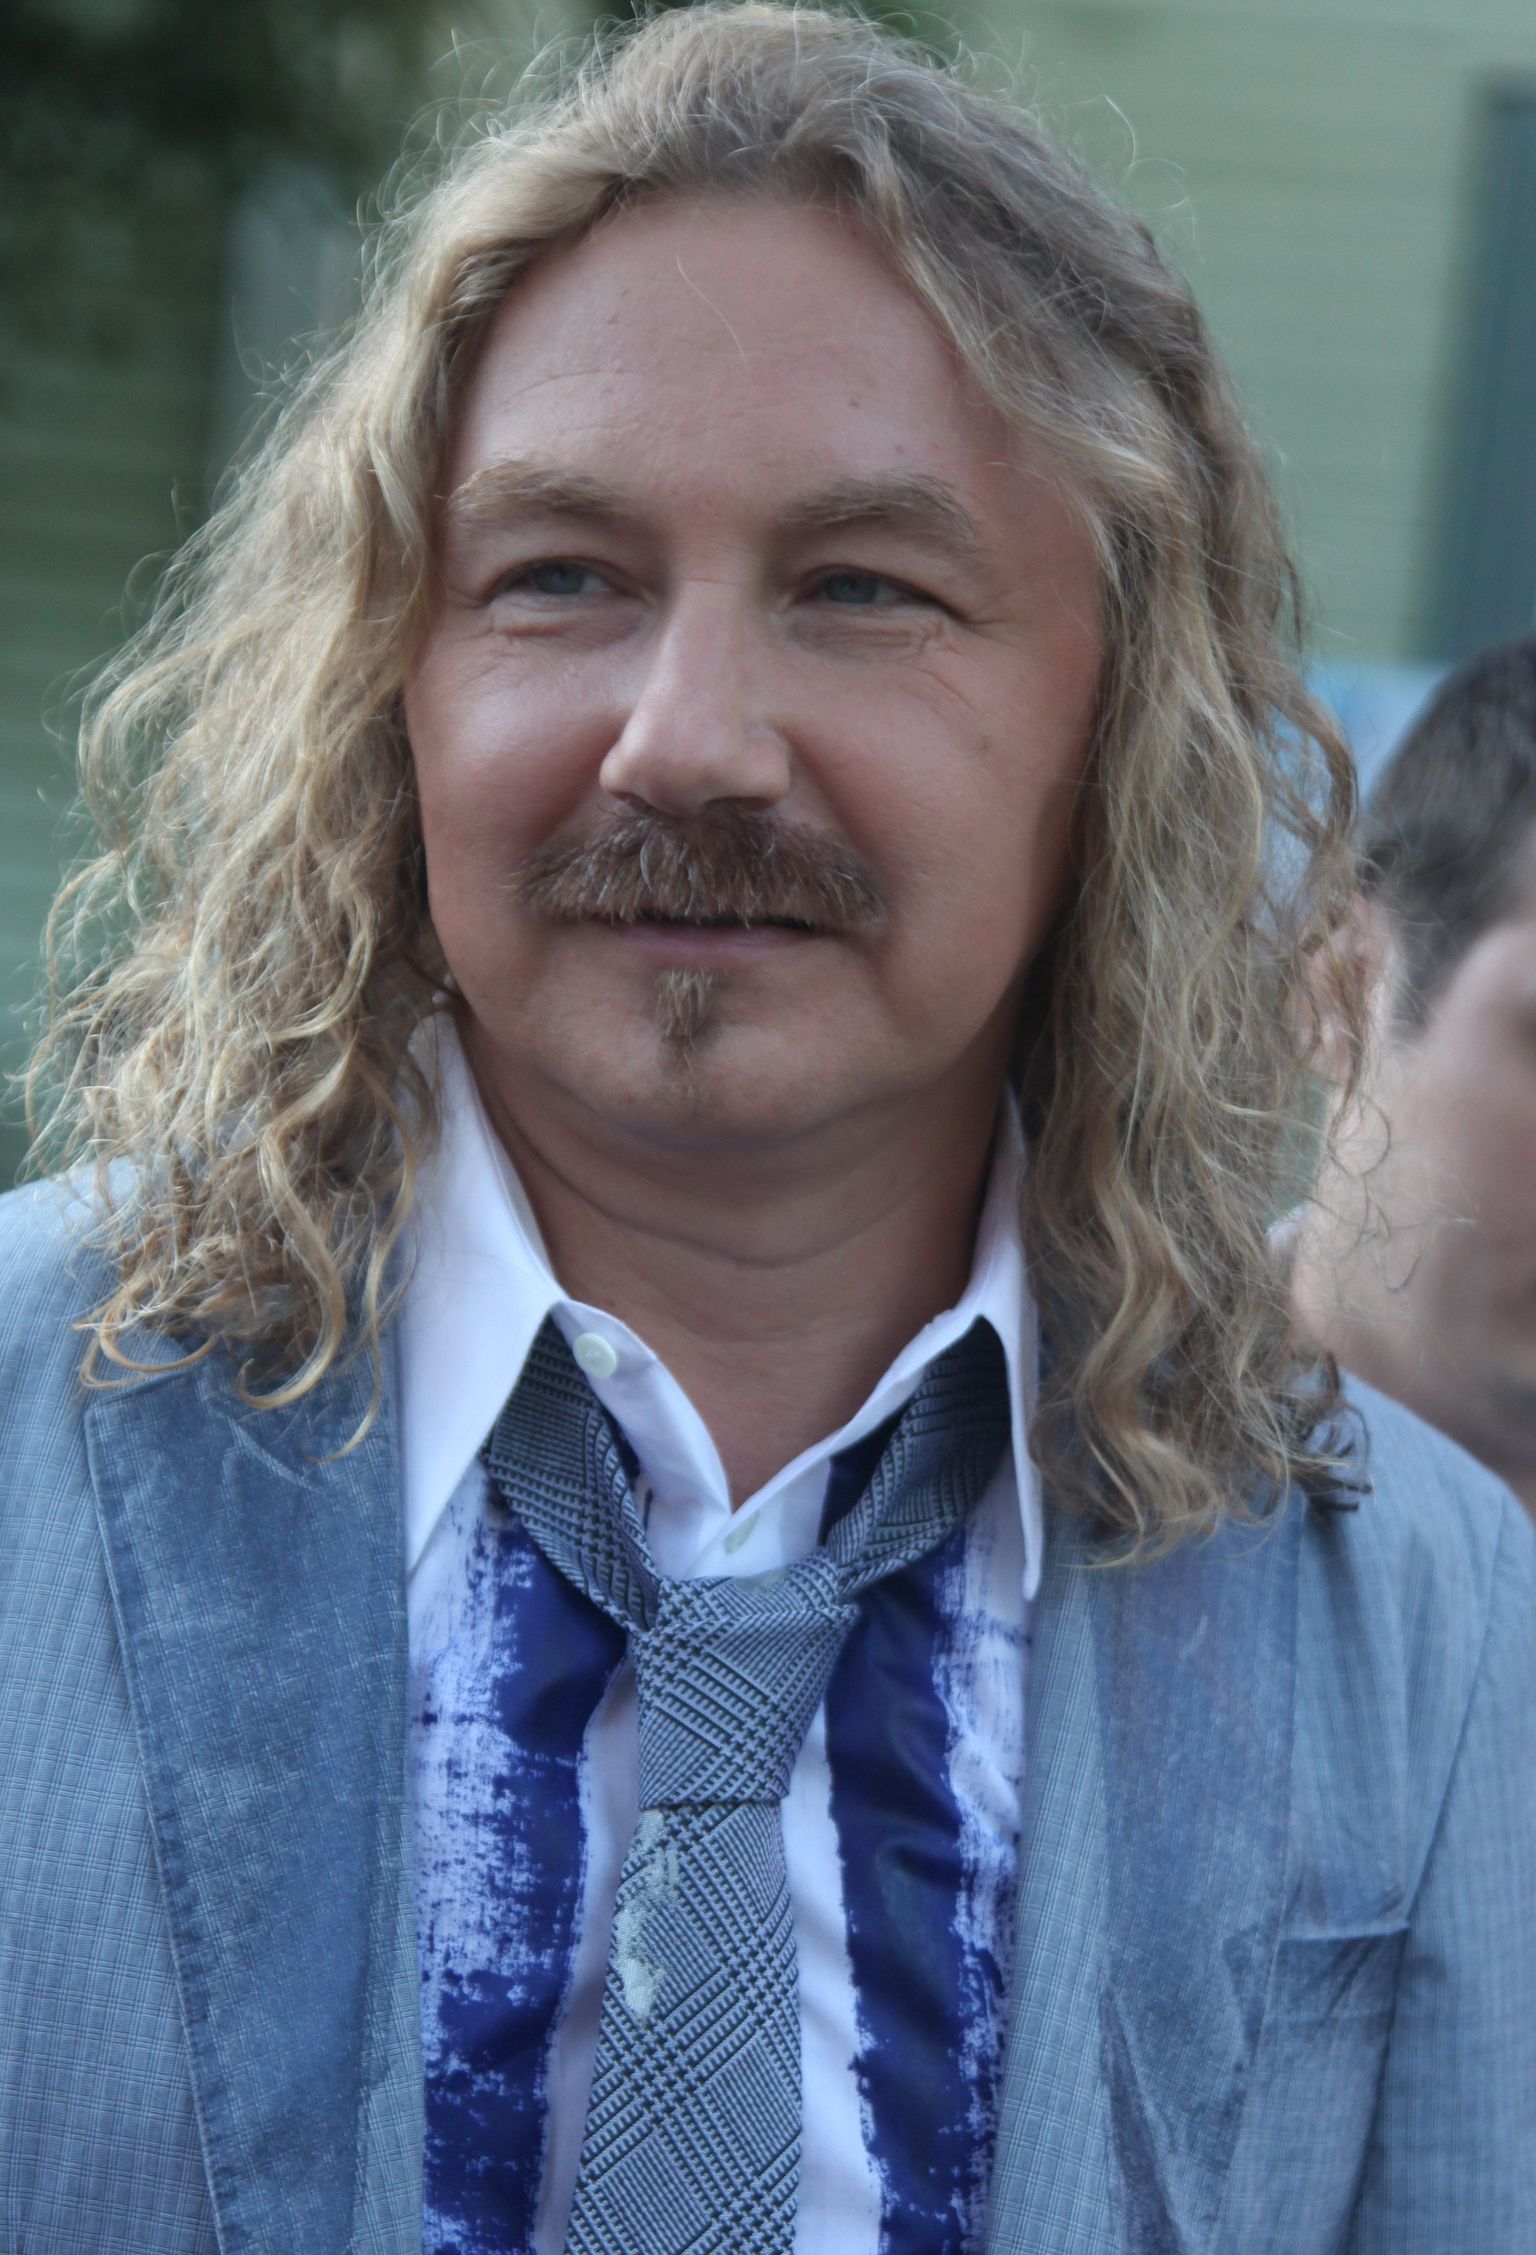 Игорь Николаев на фестивале "Новая волна" в 2010 году.